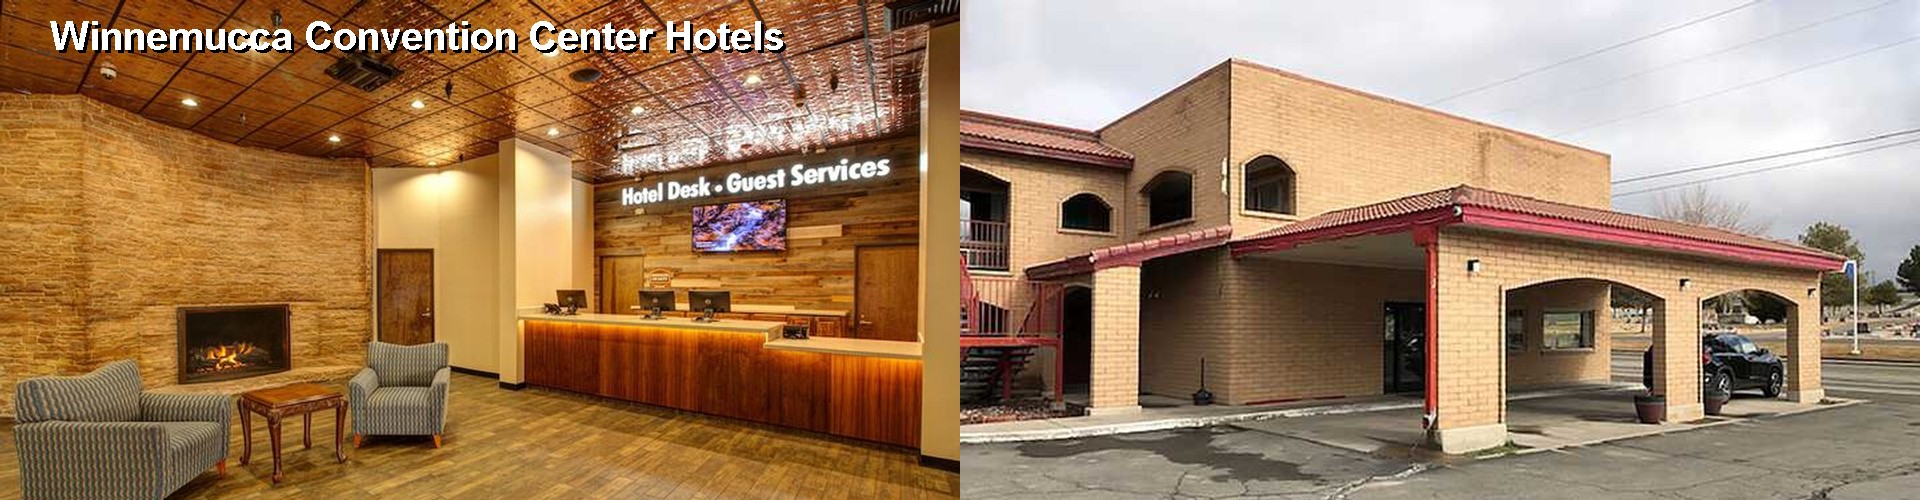 4 Best Hotels near Winnemucca Convention Center